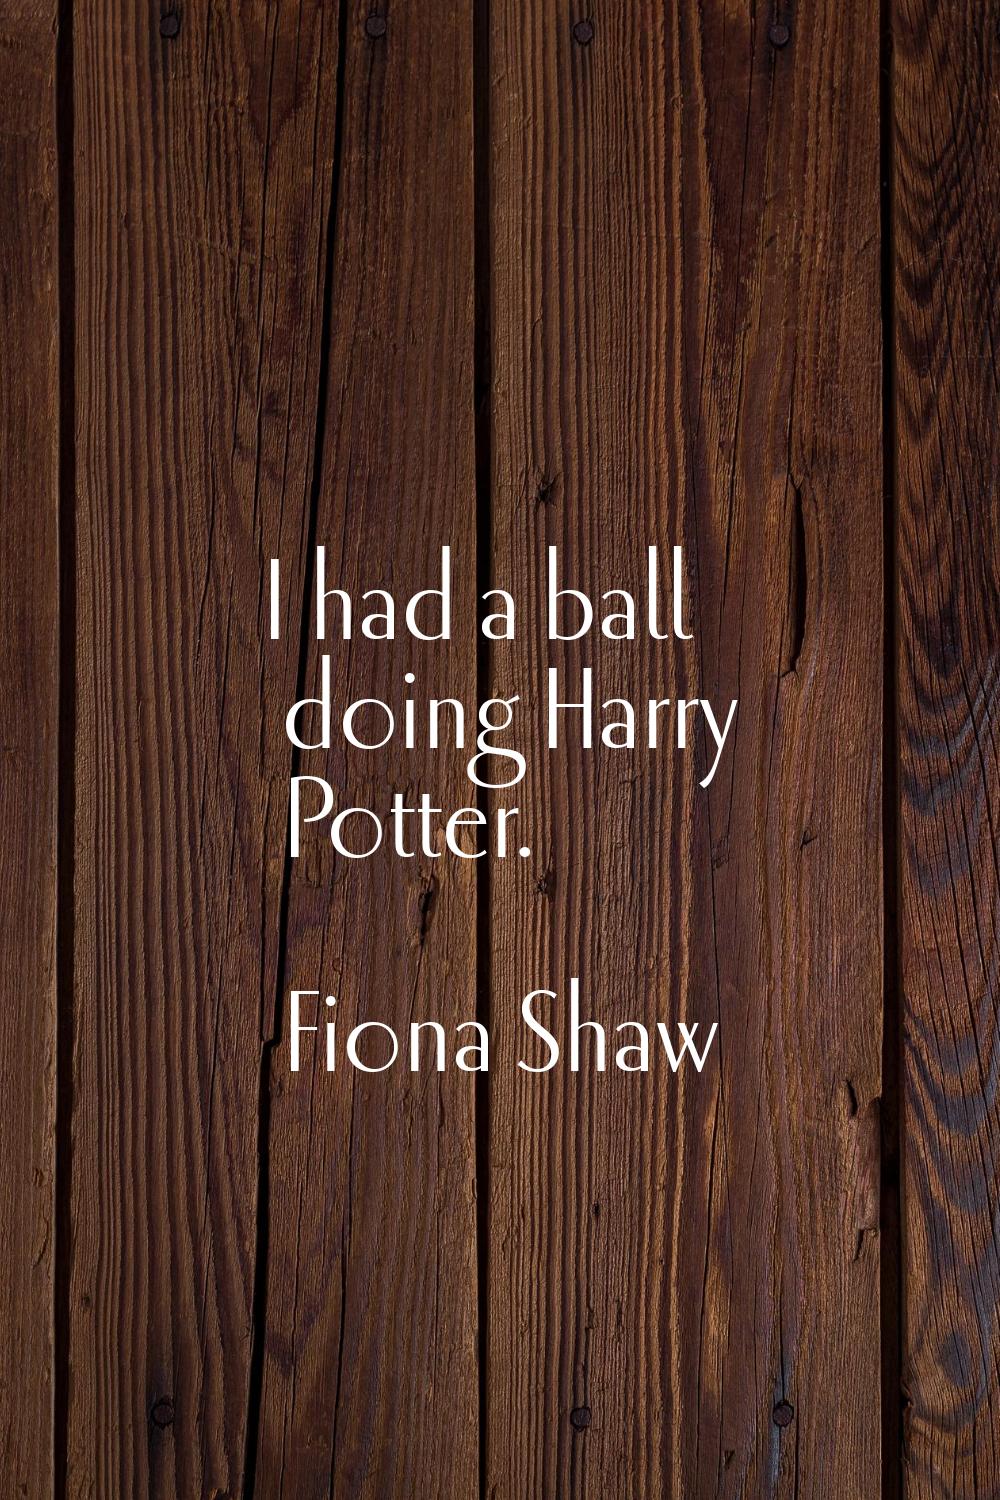 I had a ball doing Harry Potter.